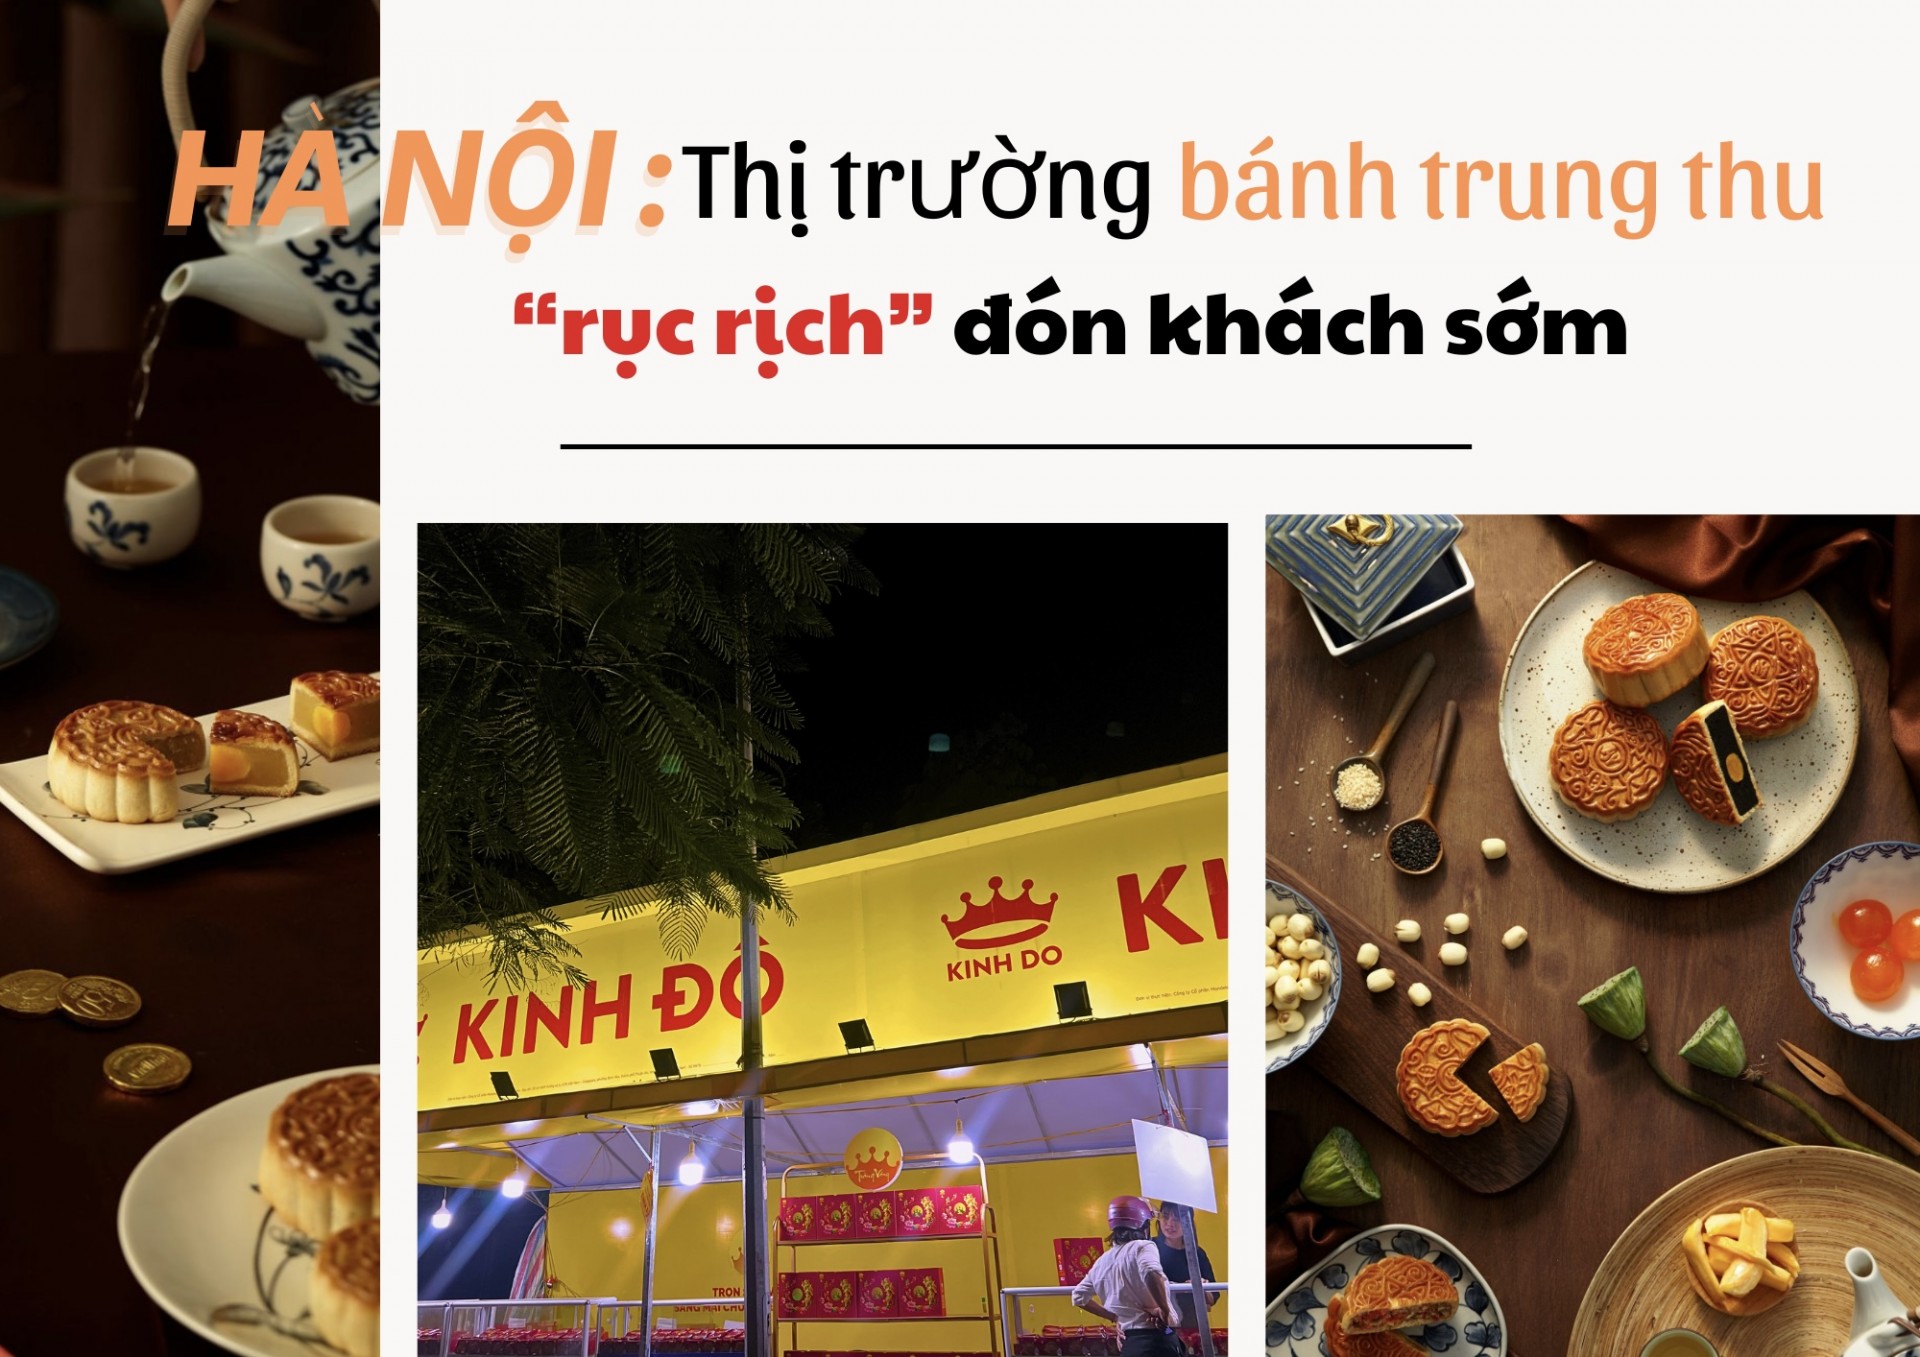 Hà Nội: Thị trường bánh trung thu "khởi động" đón khách sớm